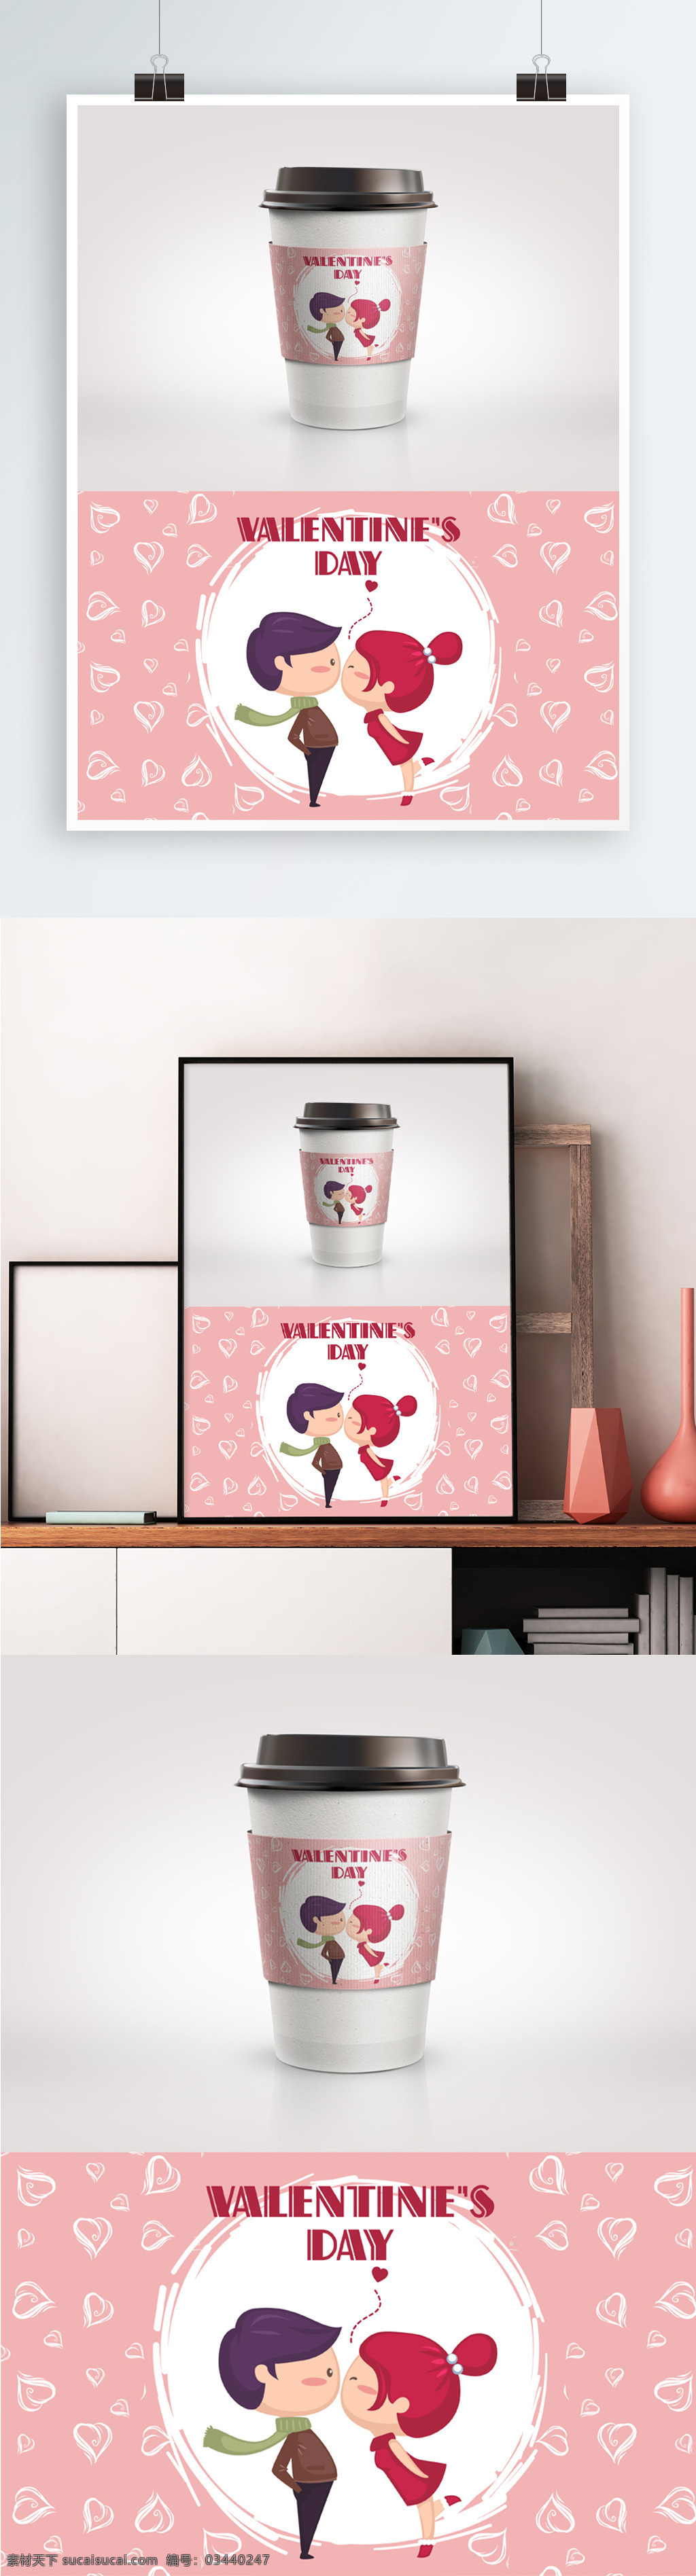 情人节 可爱 简约 咖啡 杯杯 套 爱心 包装设计 杯套 精美包装 咖啡杯 浪漫 温馨